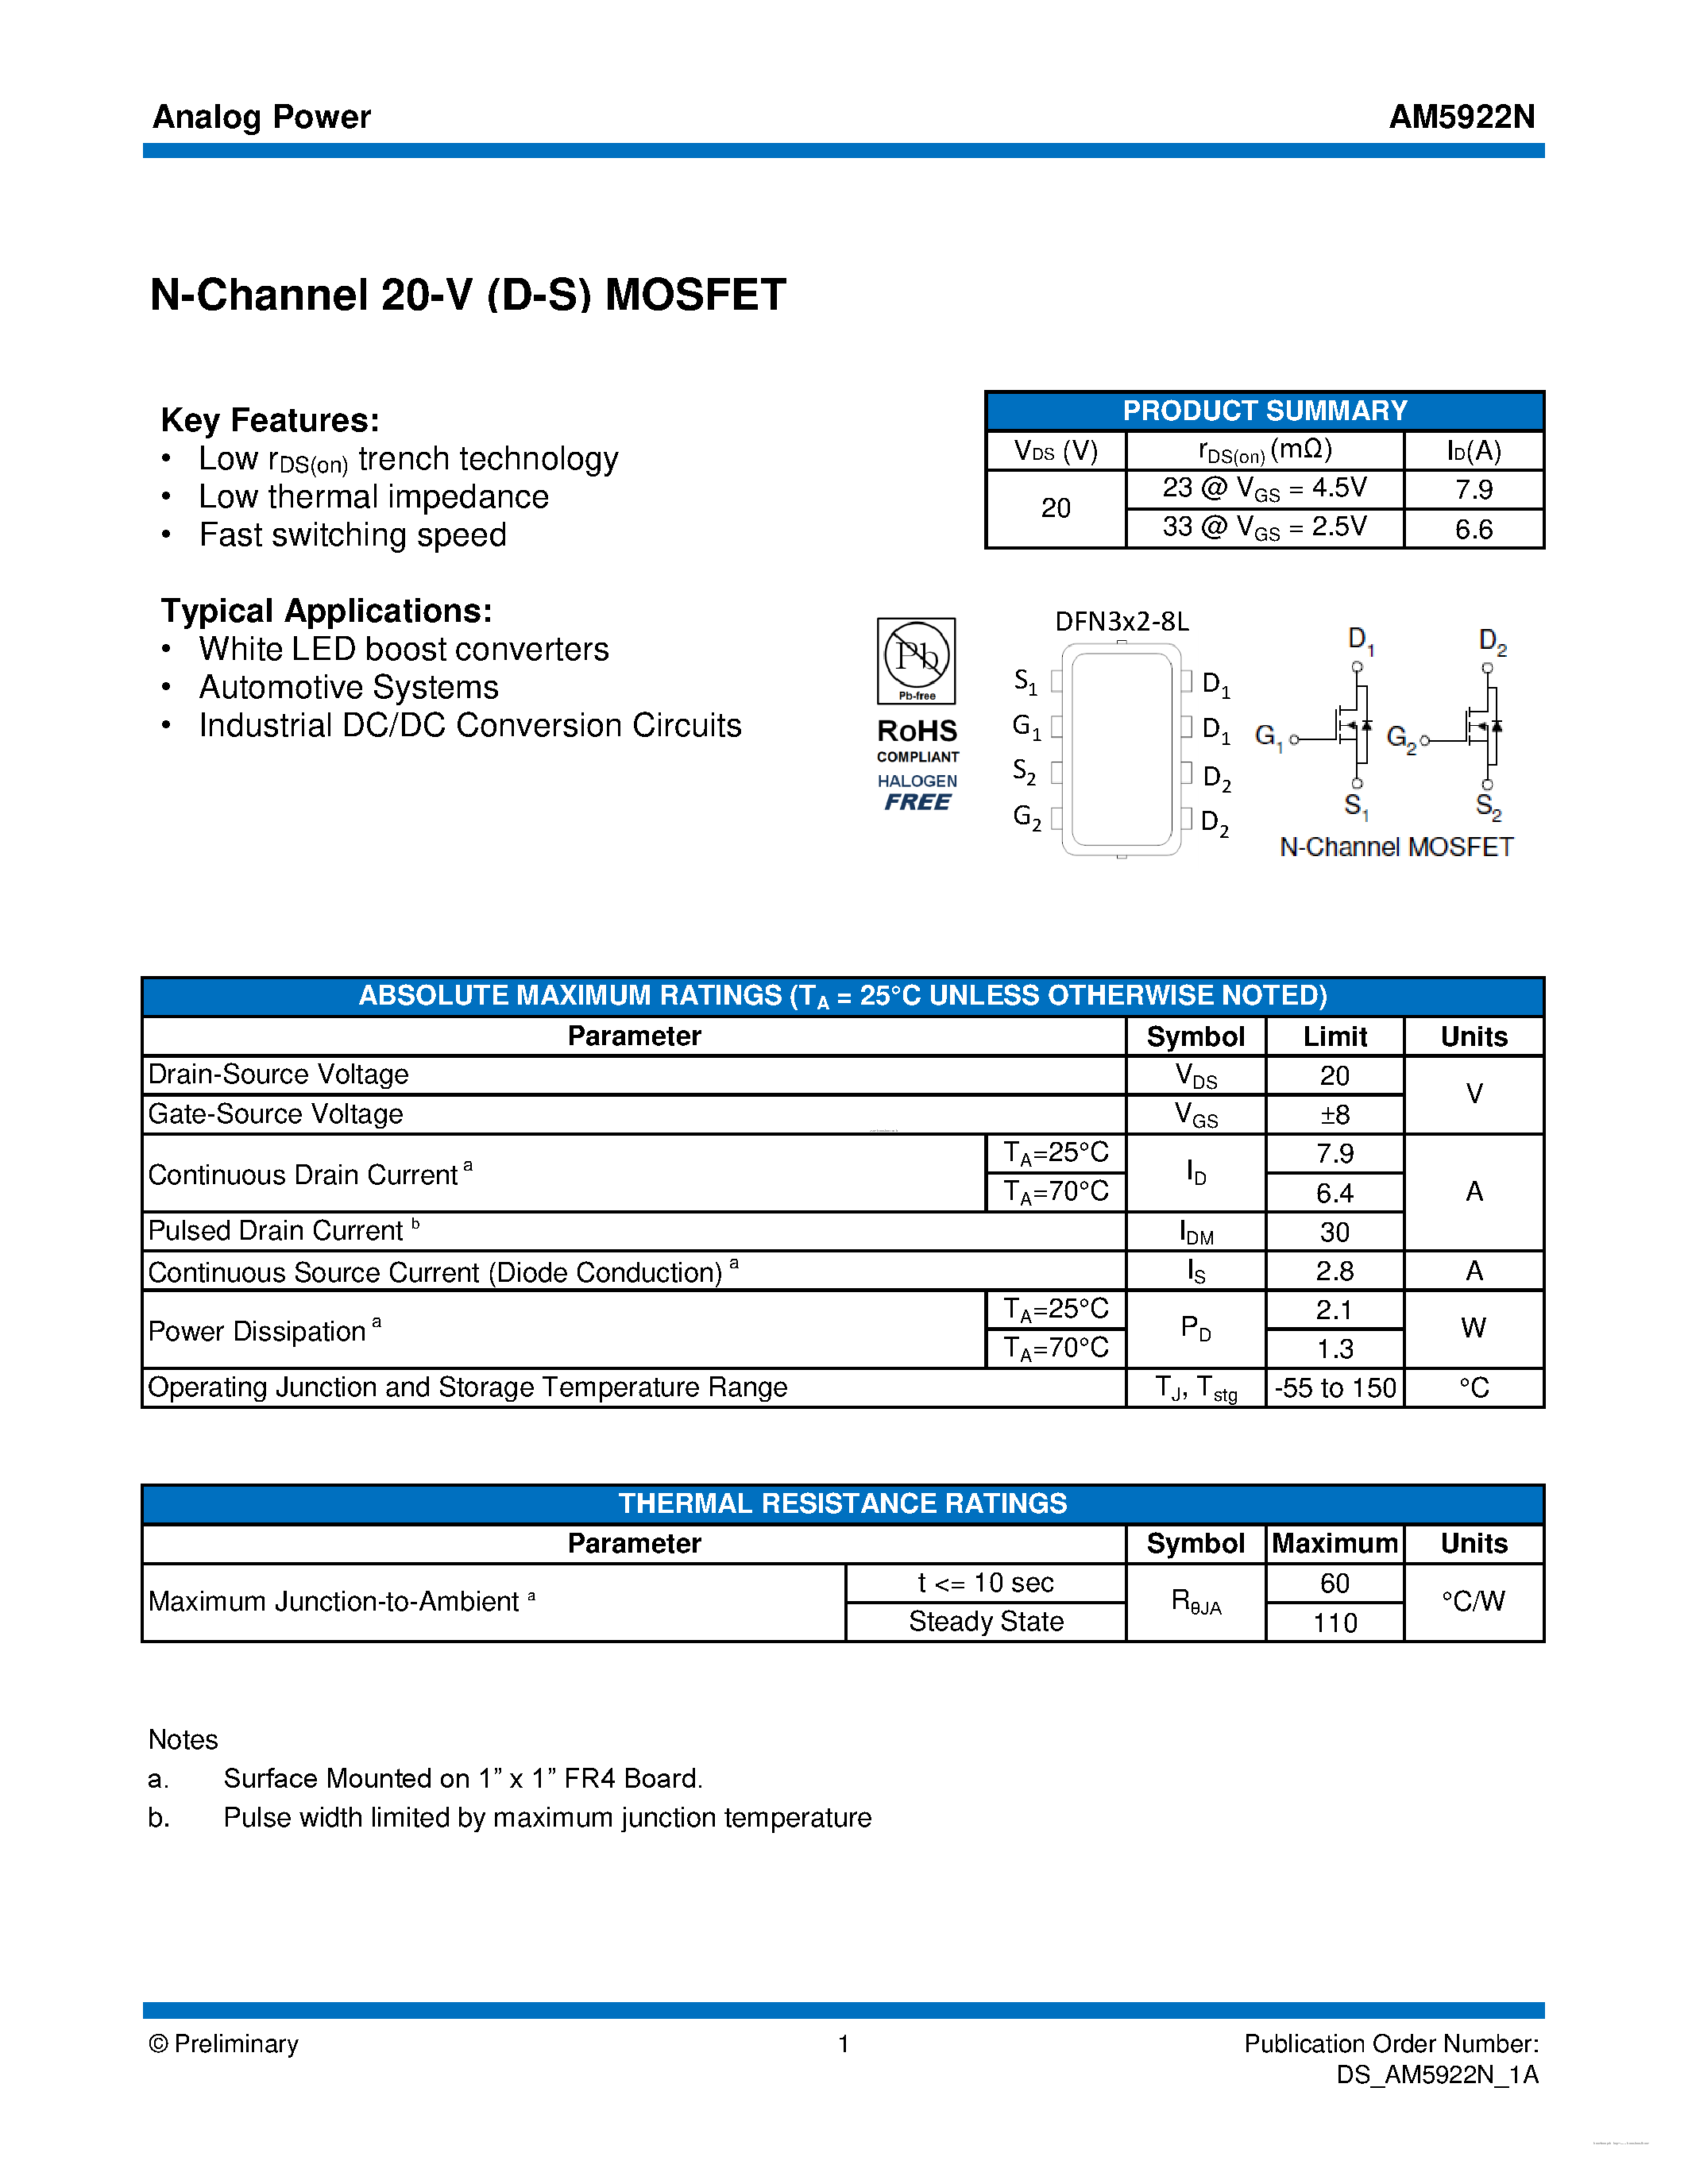 Даташит AM5922N - MOSFET страница 1